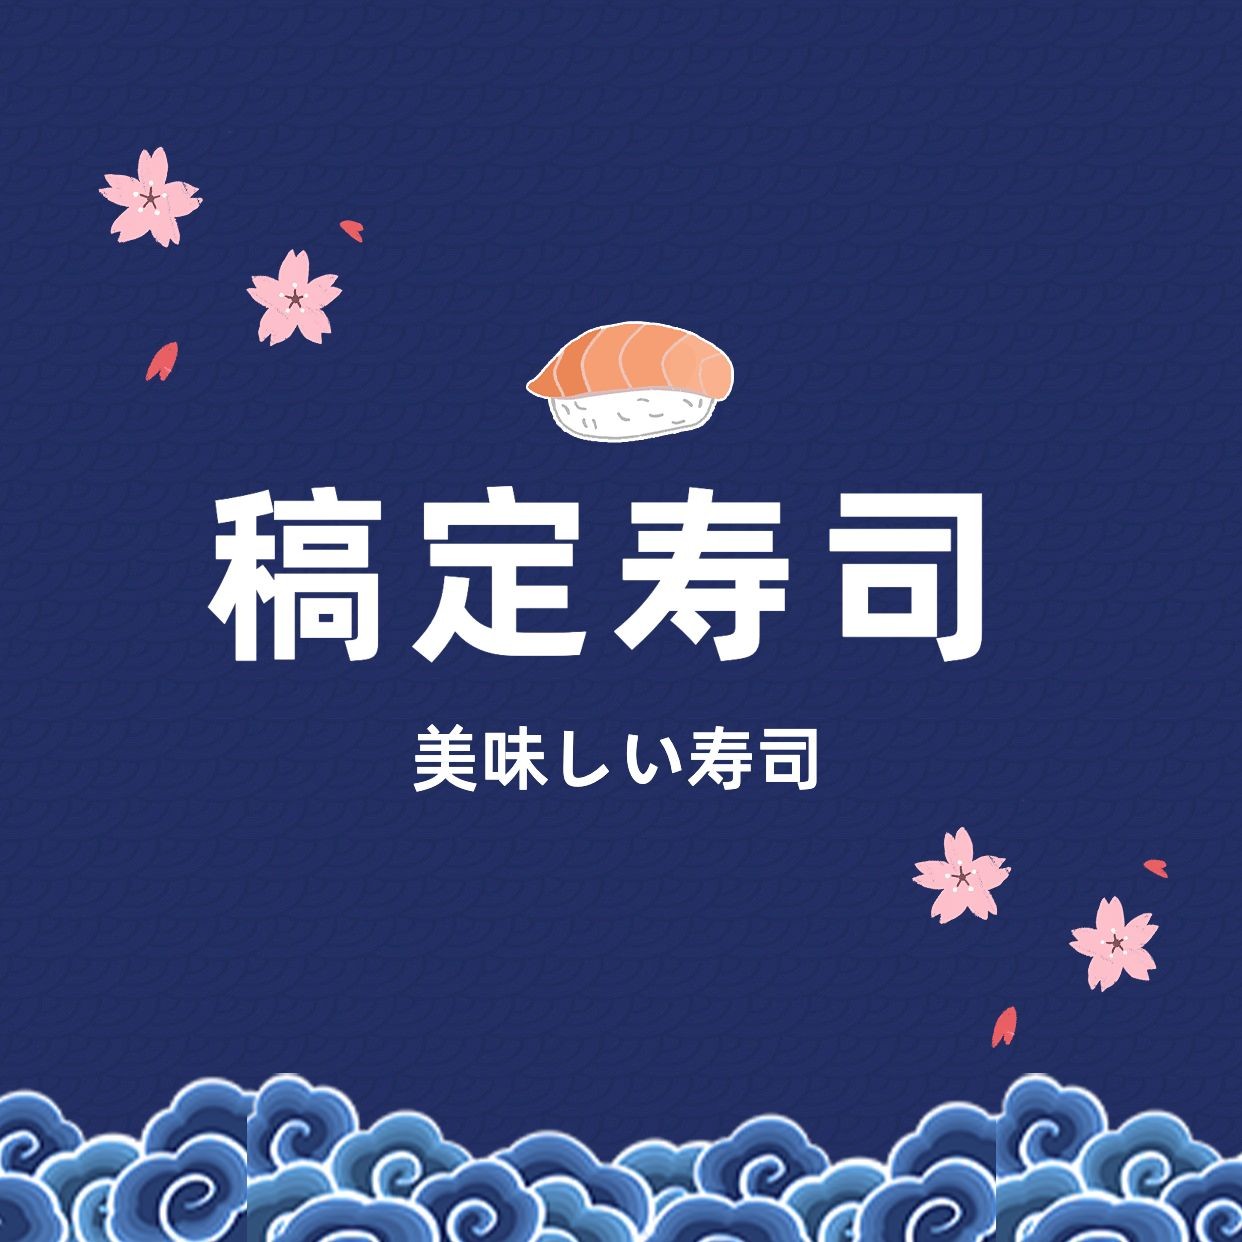 创意樱花日式寿司美团外卖店铺logo店标头像入口图预览效果